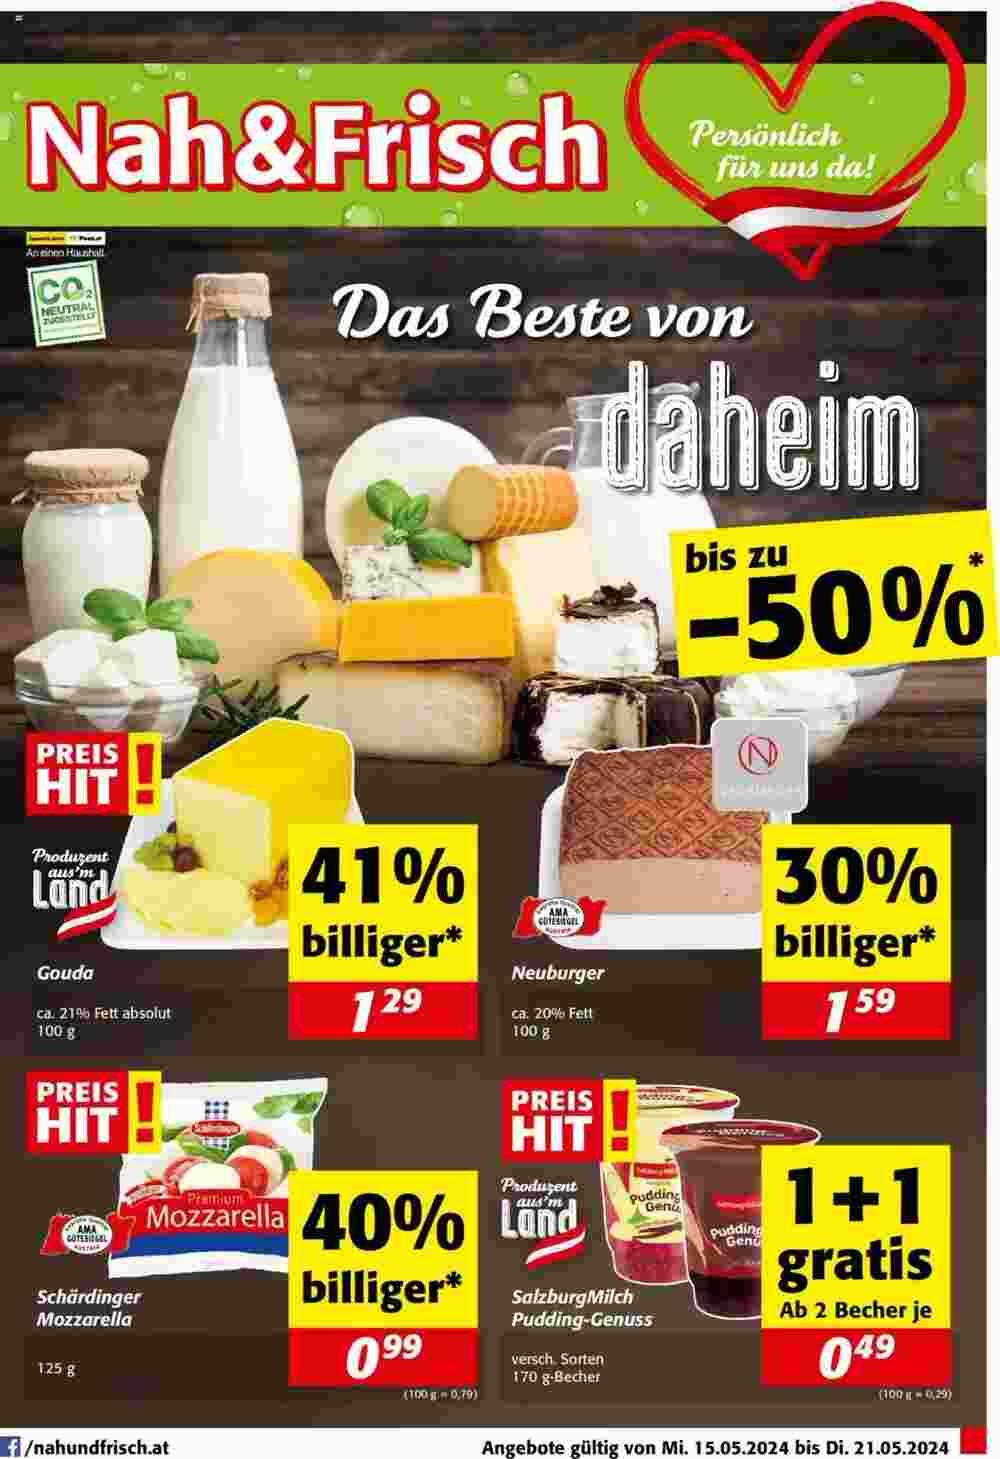 Nah&Frisch Flugblatt (ab 15.05.2024) - Angebote und Prospekt - Seite 1